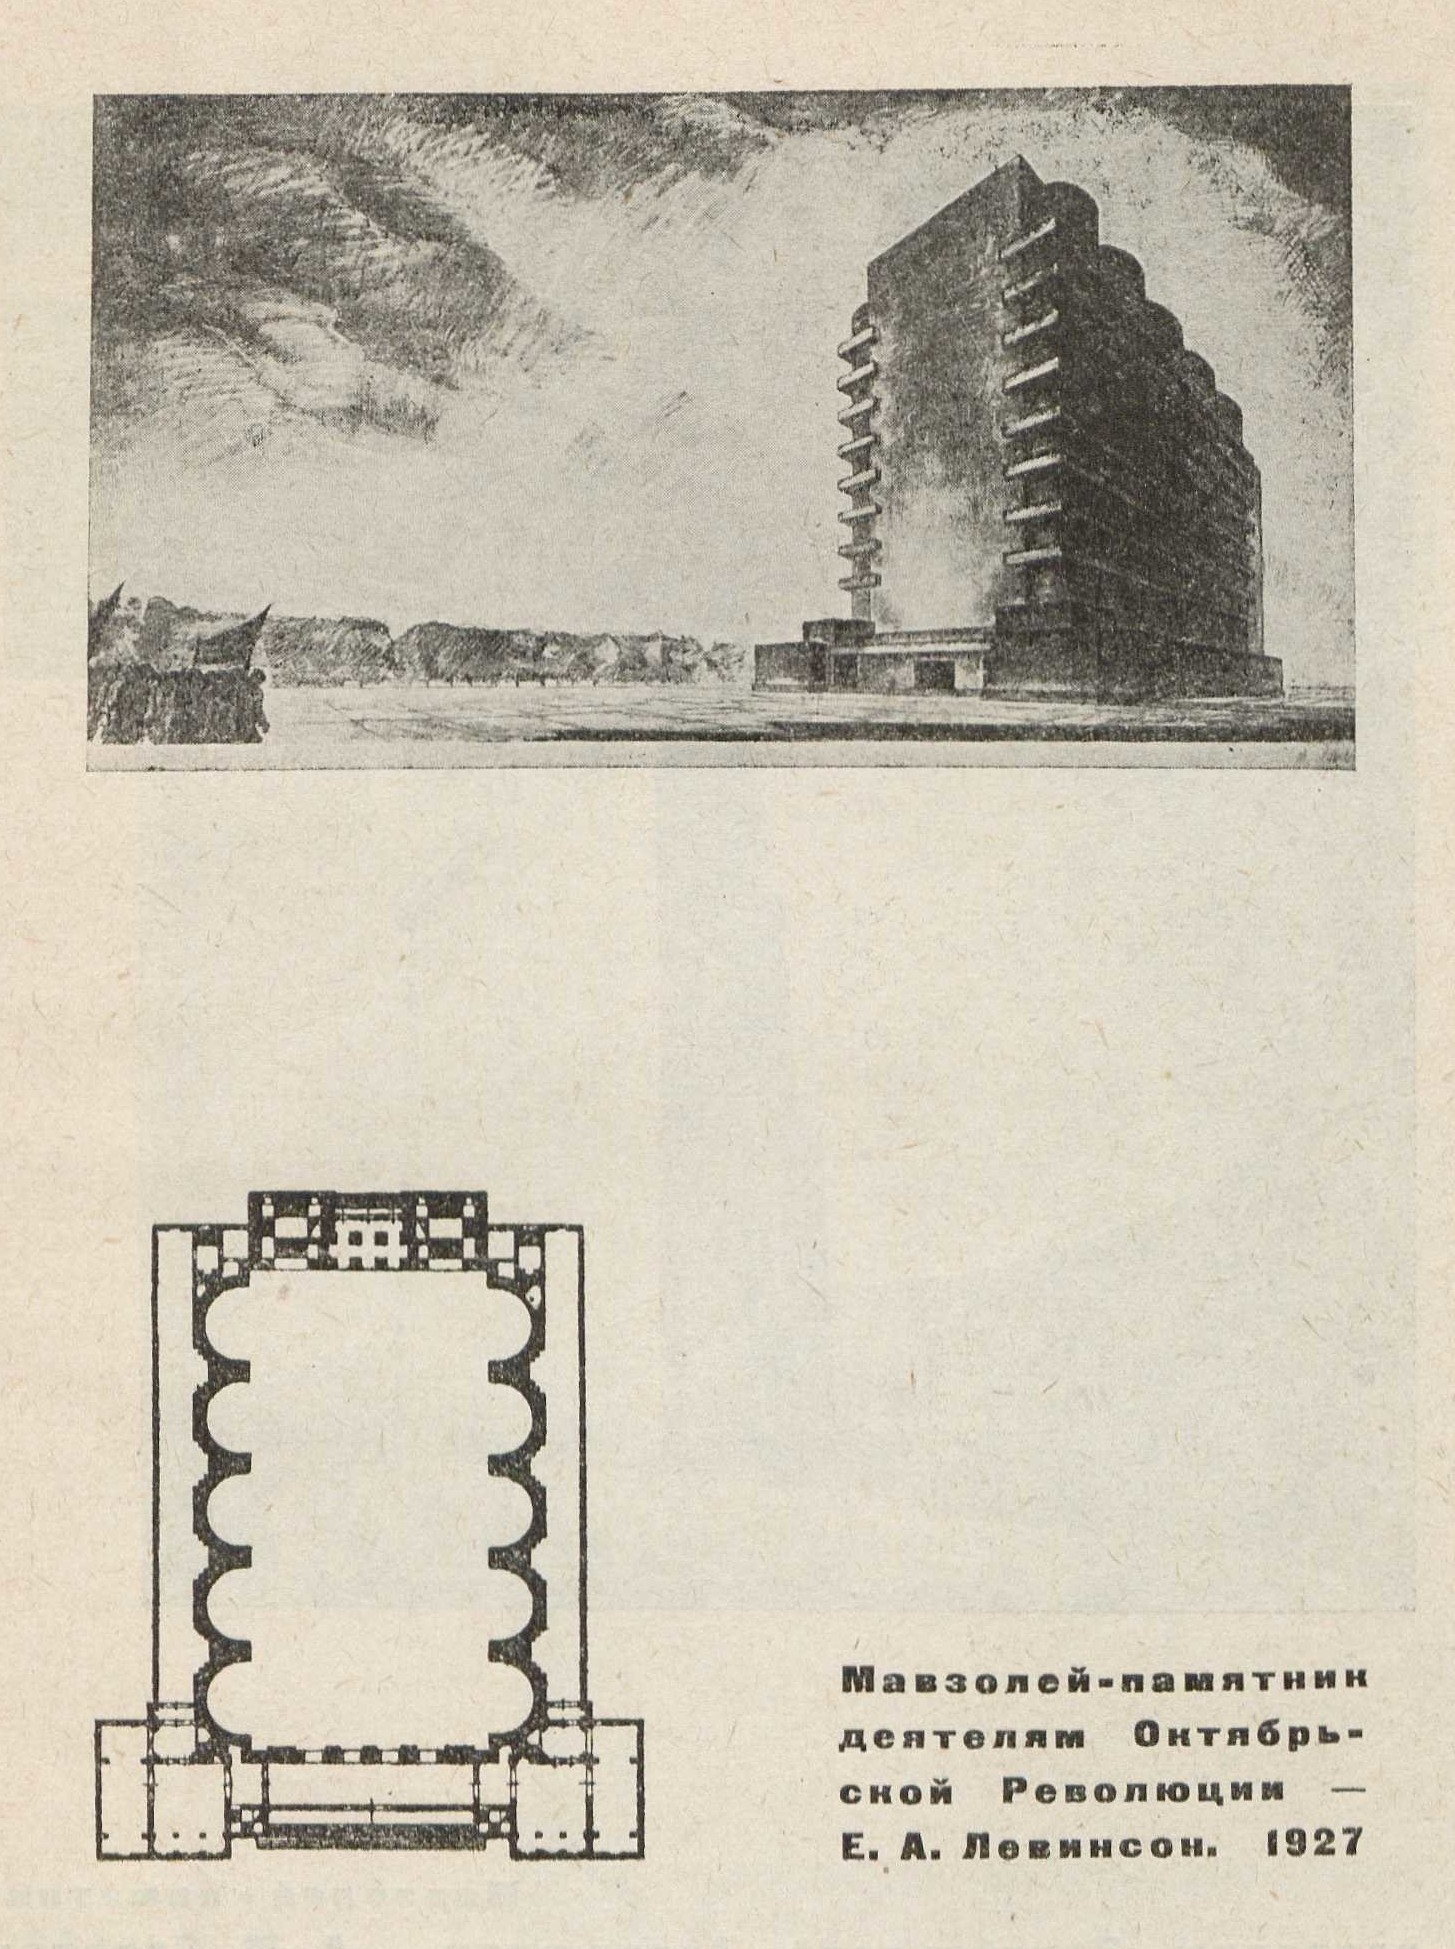 Мавзолей-памятник деятелям Октябрьской Революции — Е. А. Левинсон. 1927